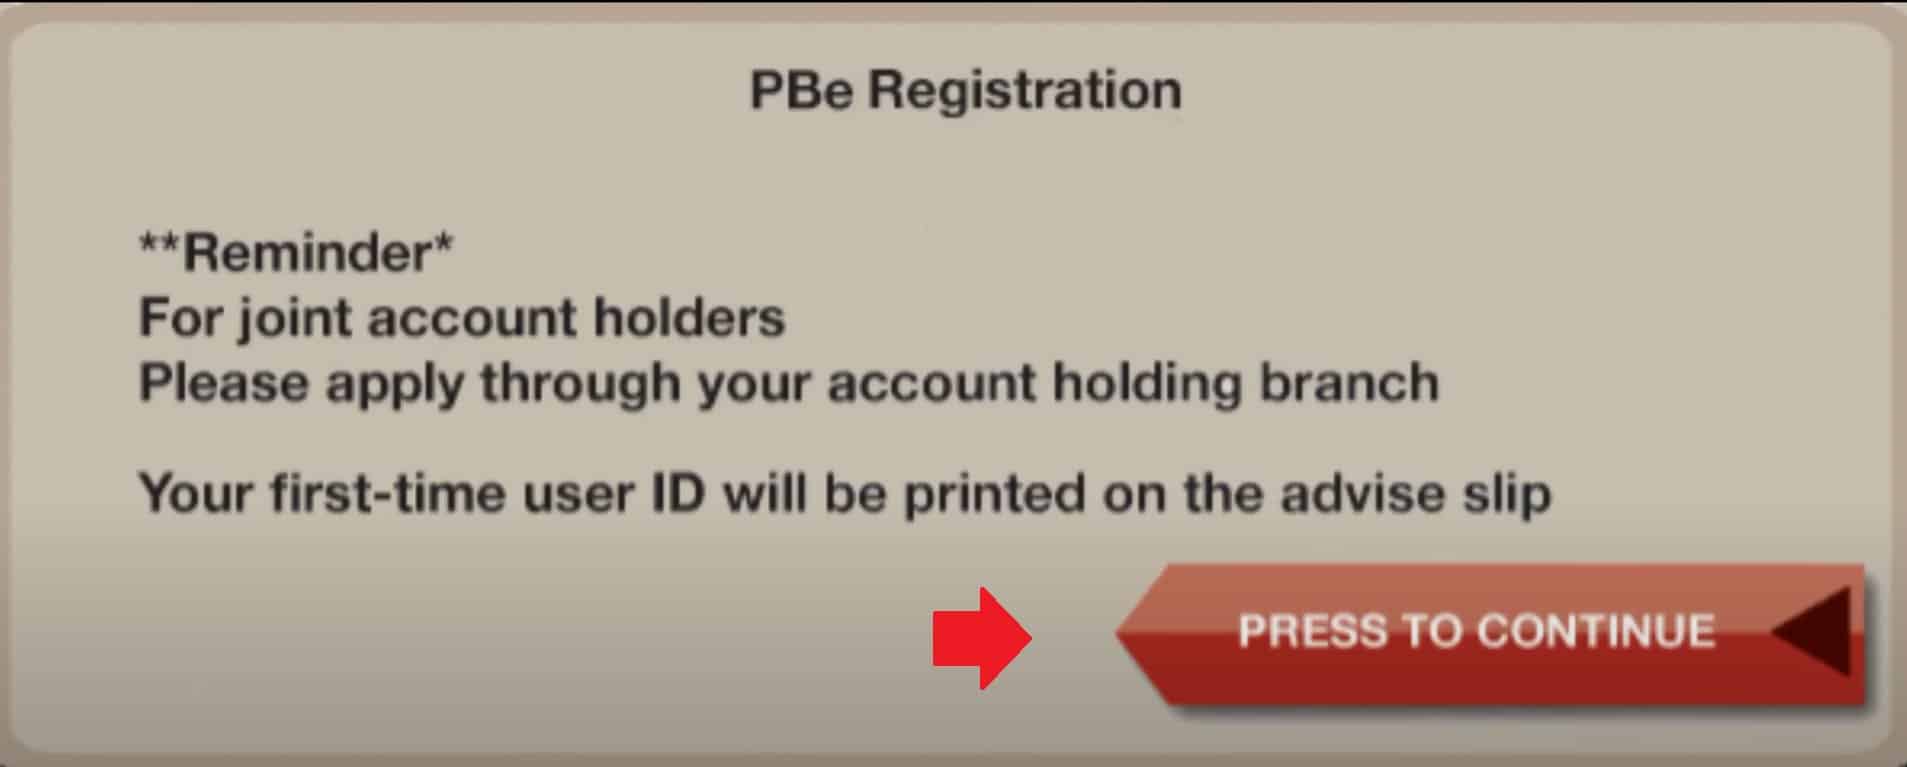 cara daftar public bank online (id atm 3)